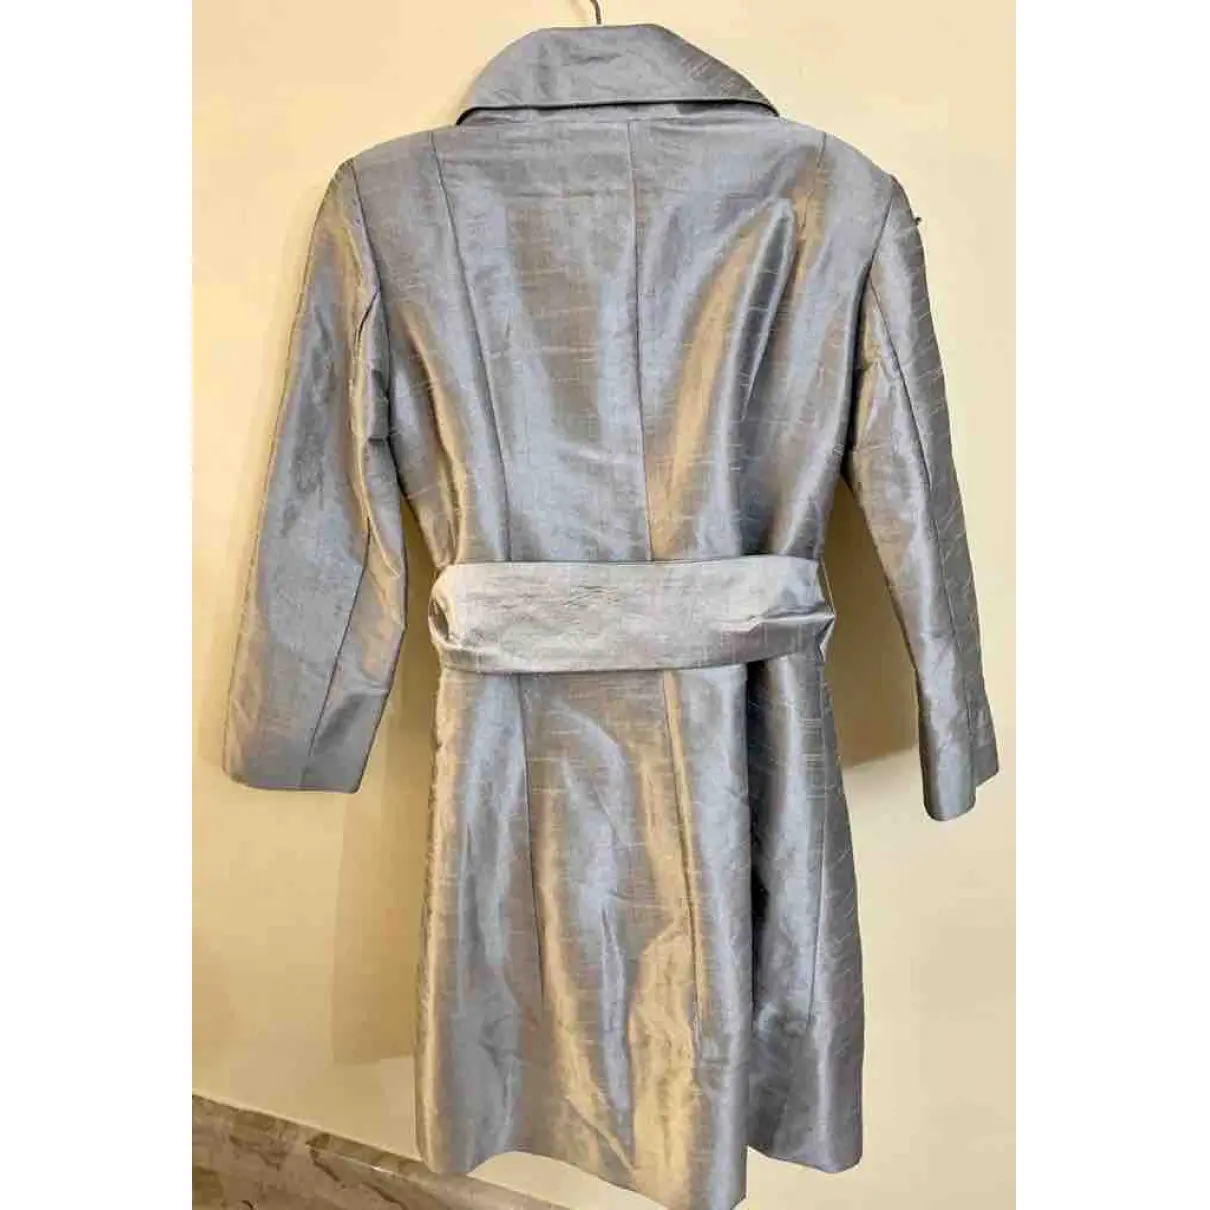 Buy Matilde Cano Silk trench coat online